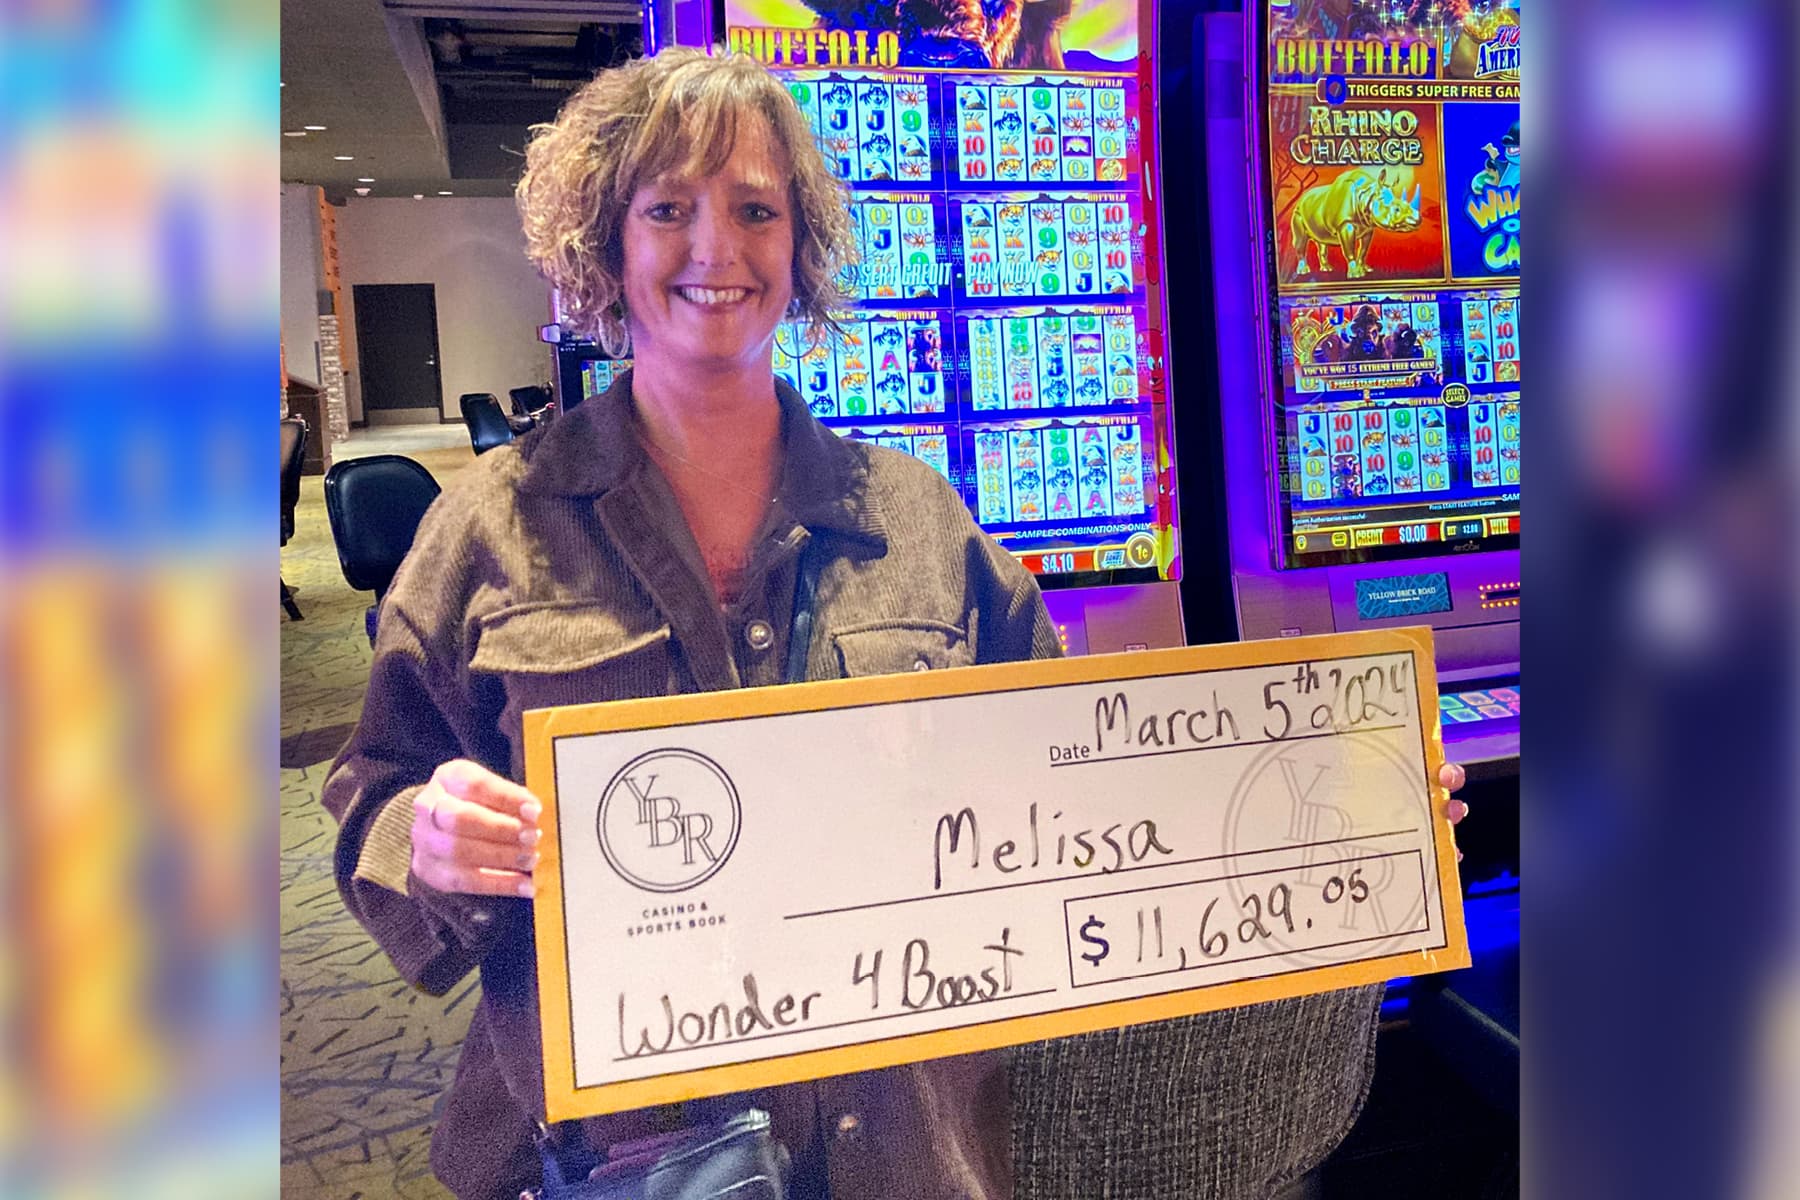 Melissa won $11,629